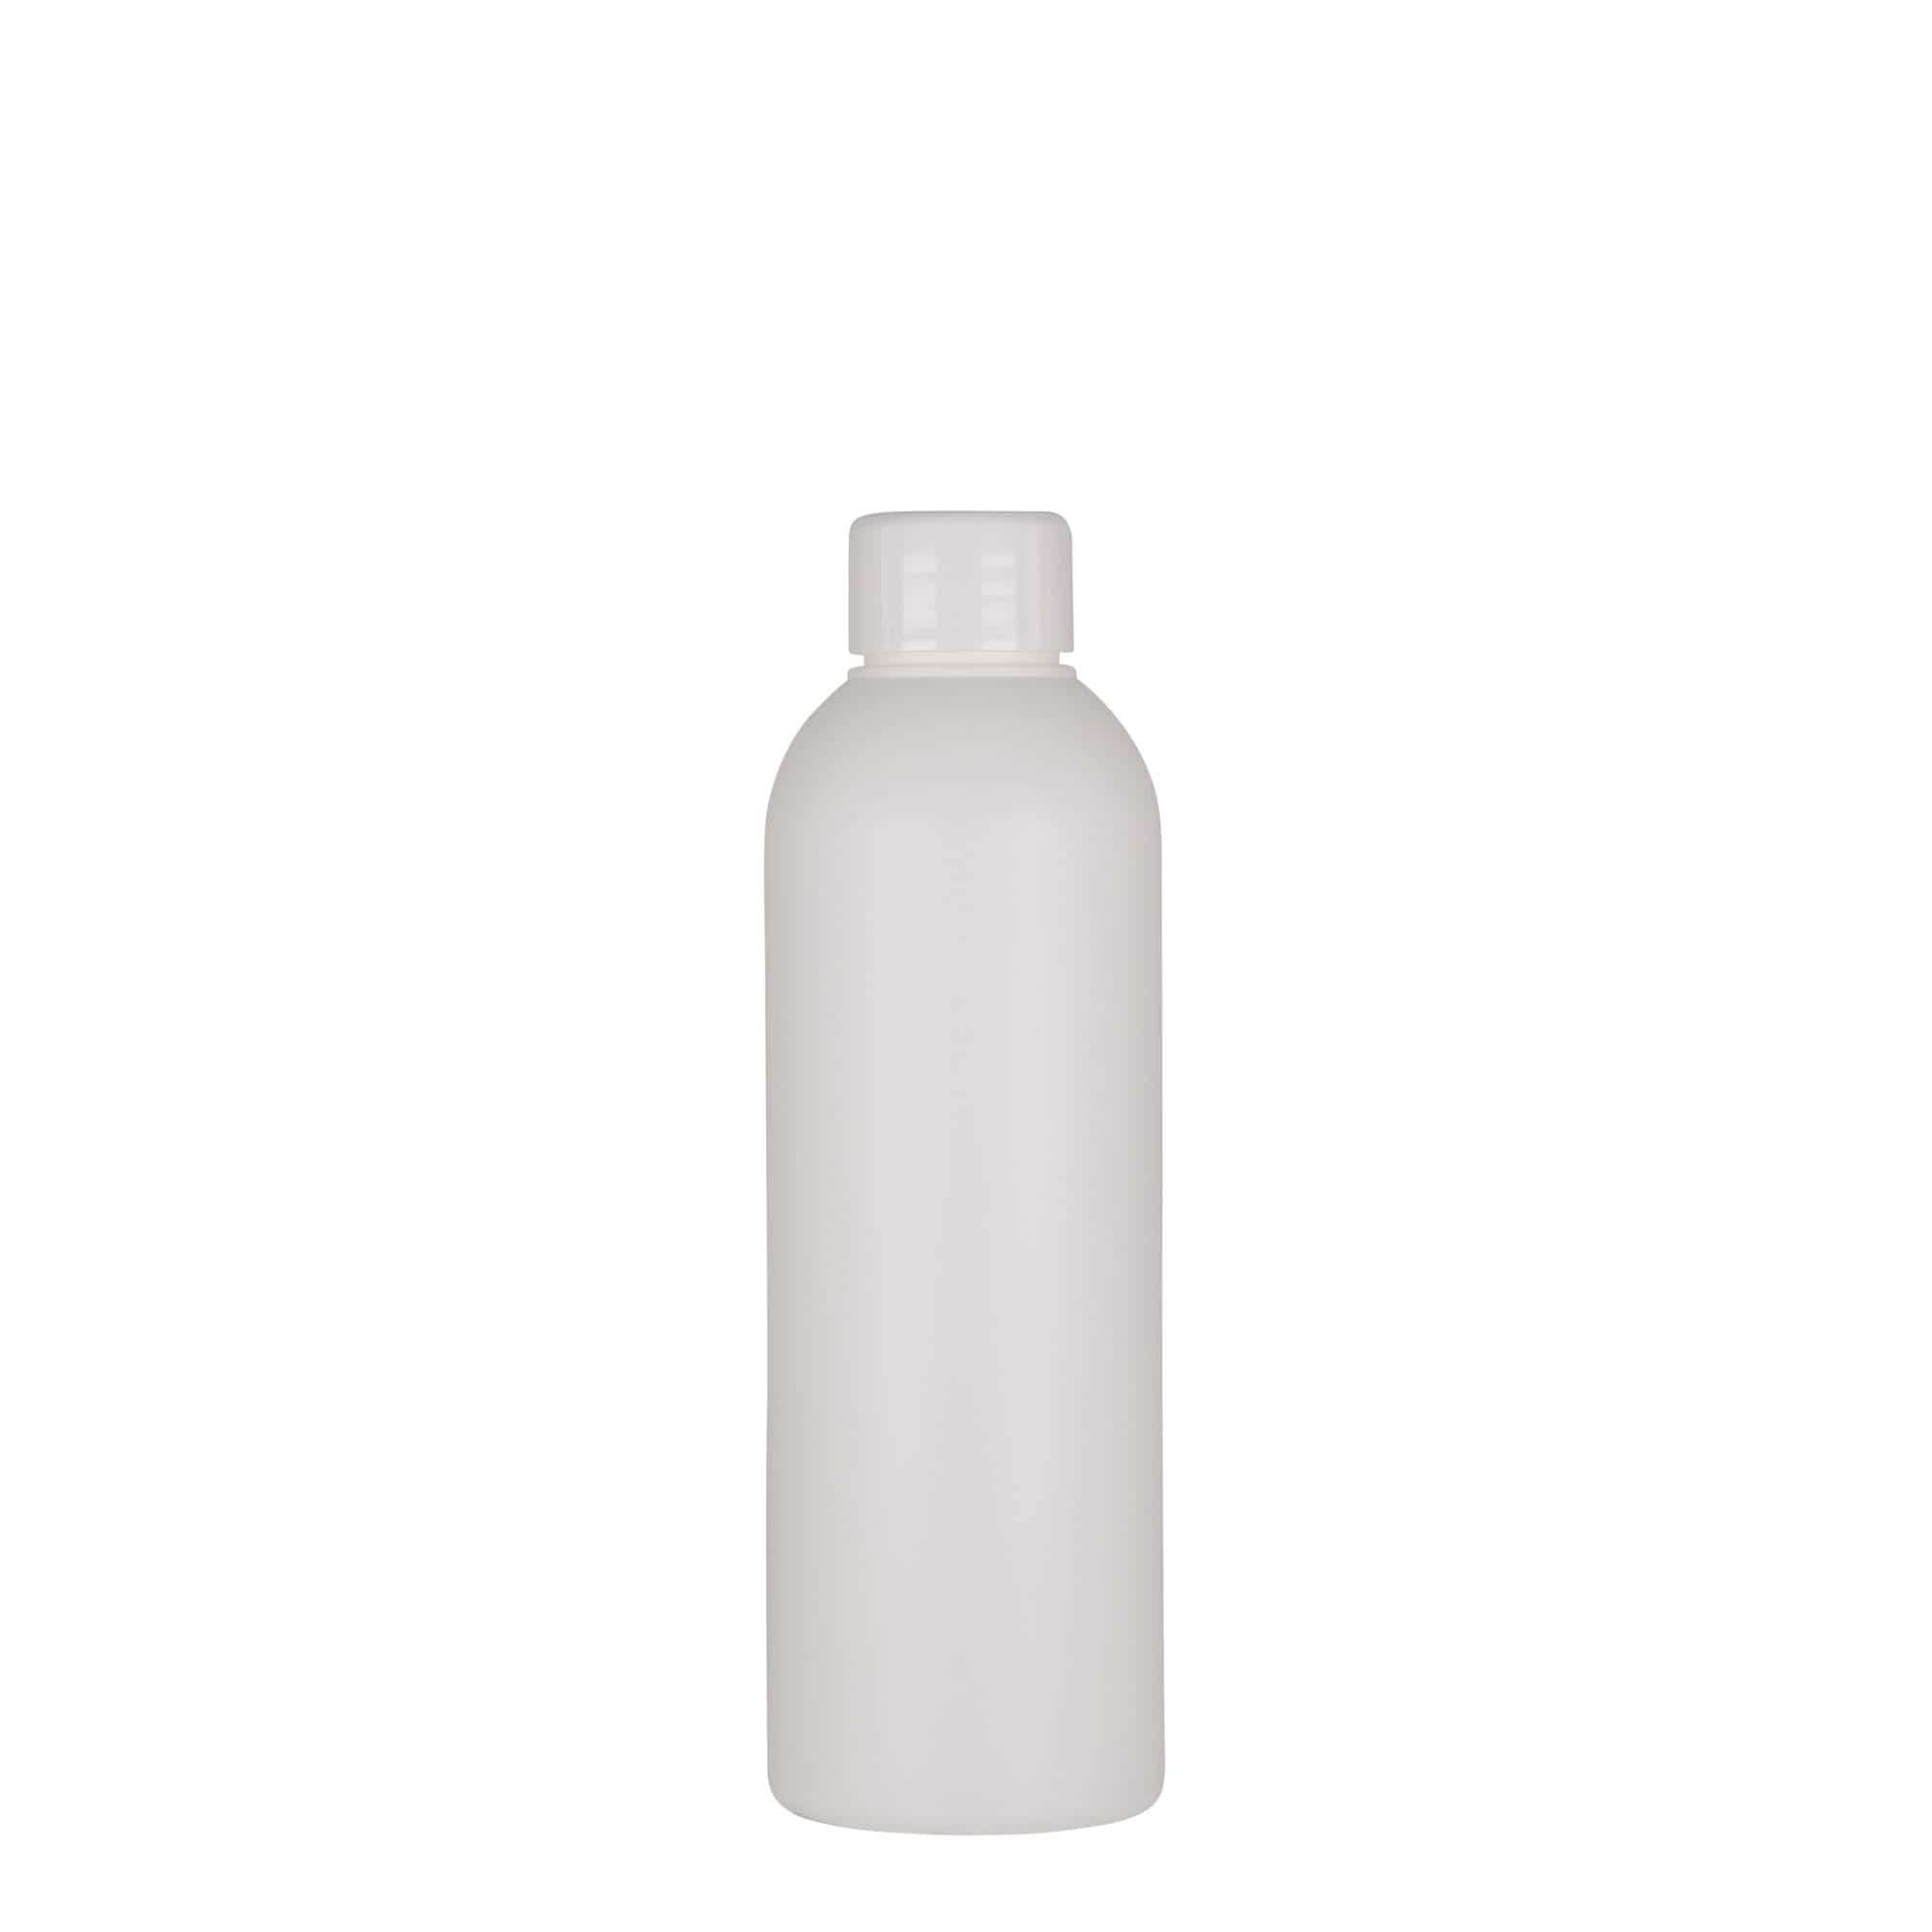 200 ml plastic bottle 'Tuffy', HDPE, white, closure: GPI 24/410